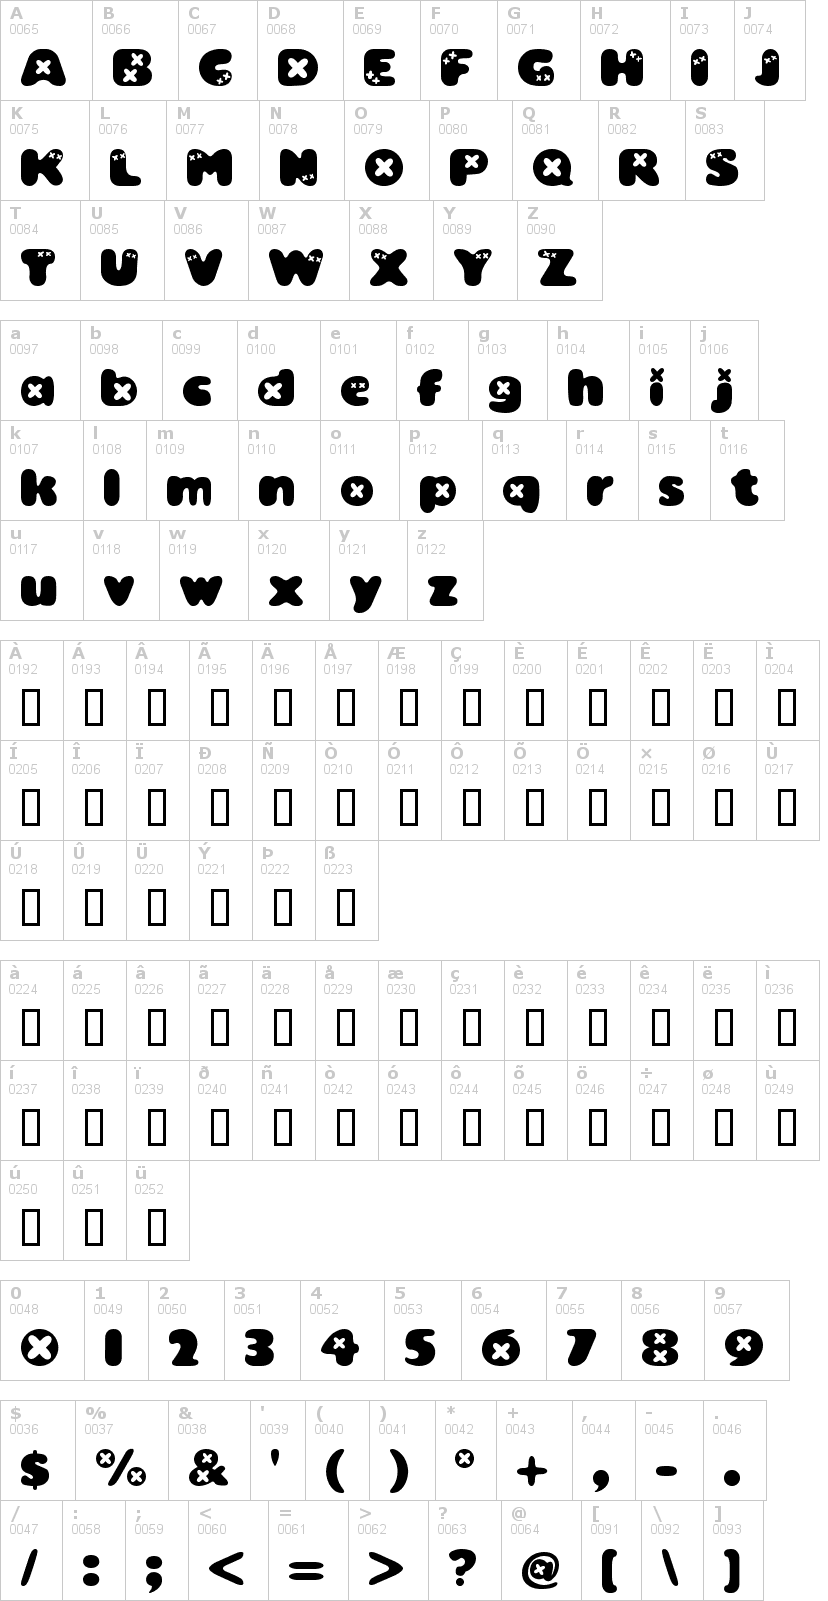 Lettere dell'alfabeto del font bambino-tw con le quali è possibile realizzare adesivi prespaziati